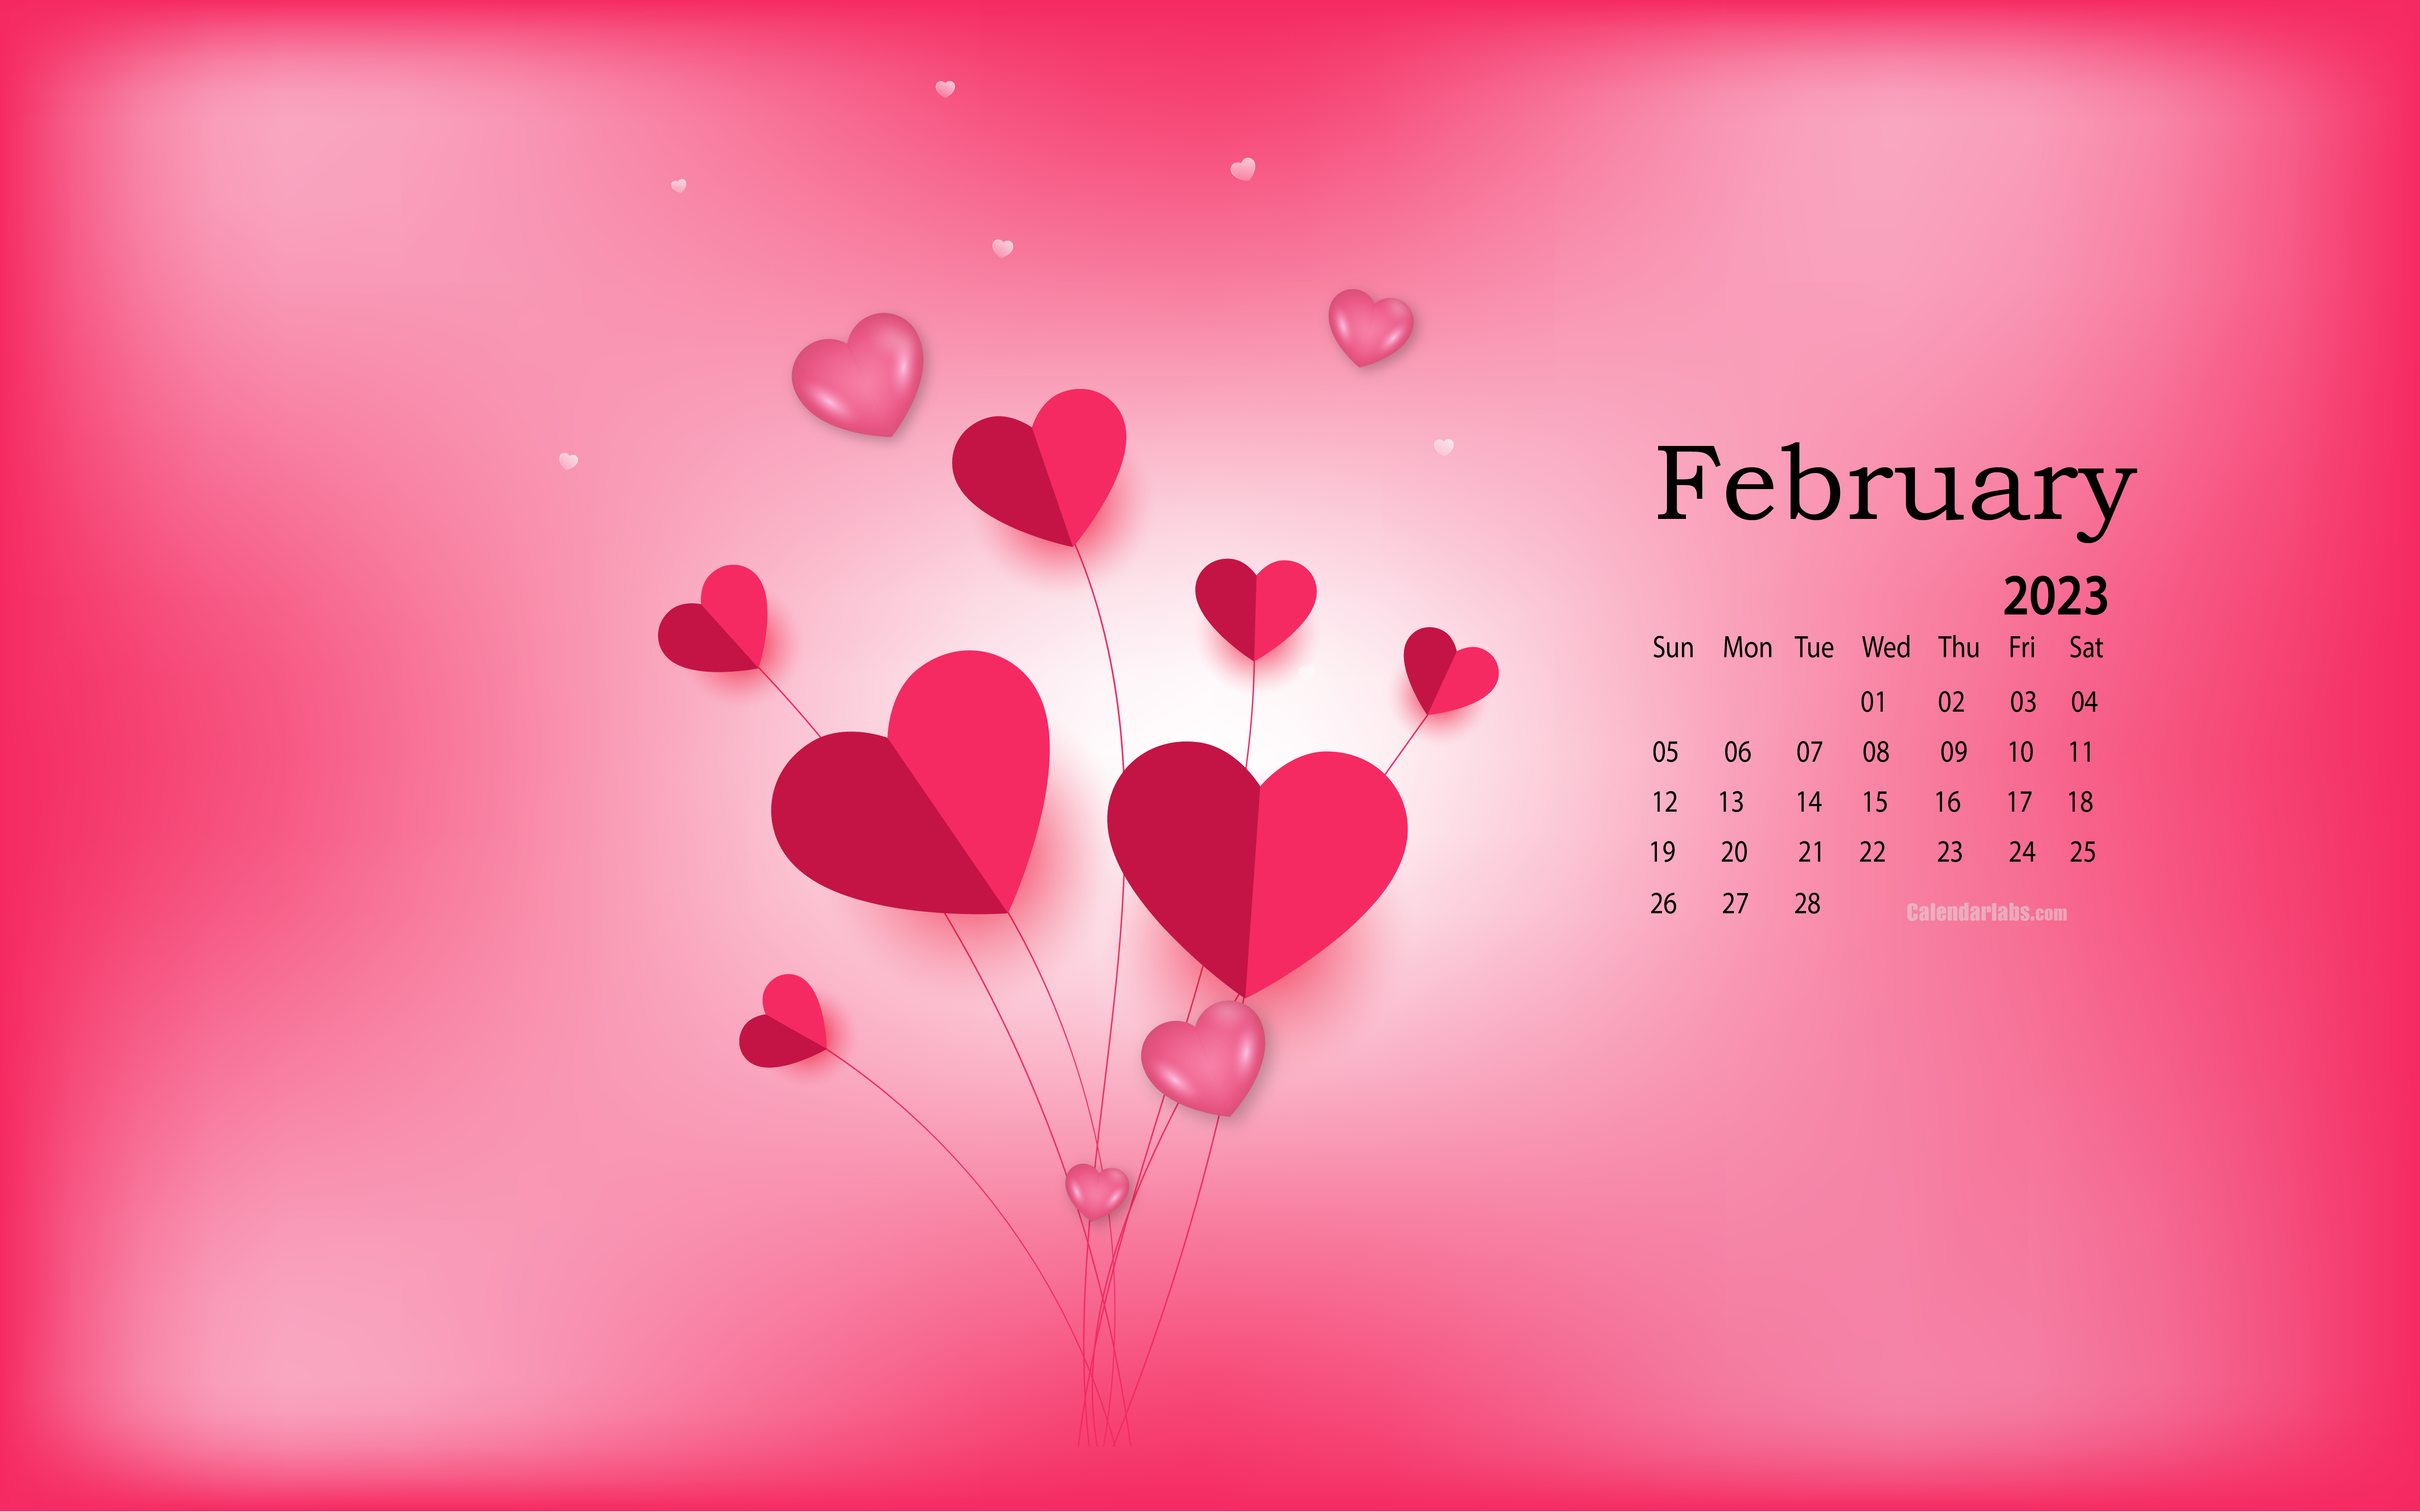 February 2023 Desktop Wallpaper Calendar - CalendarLabs